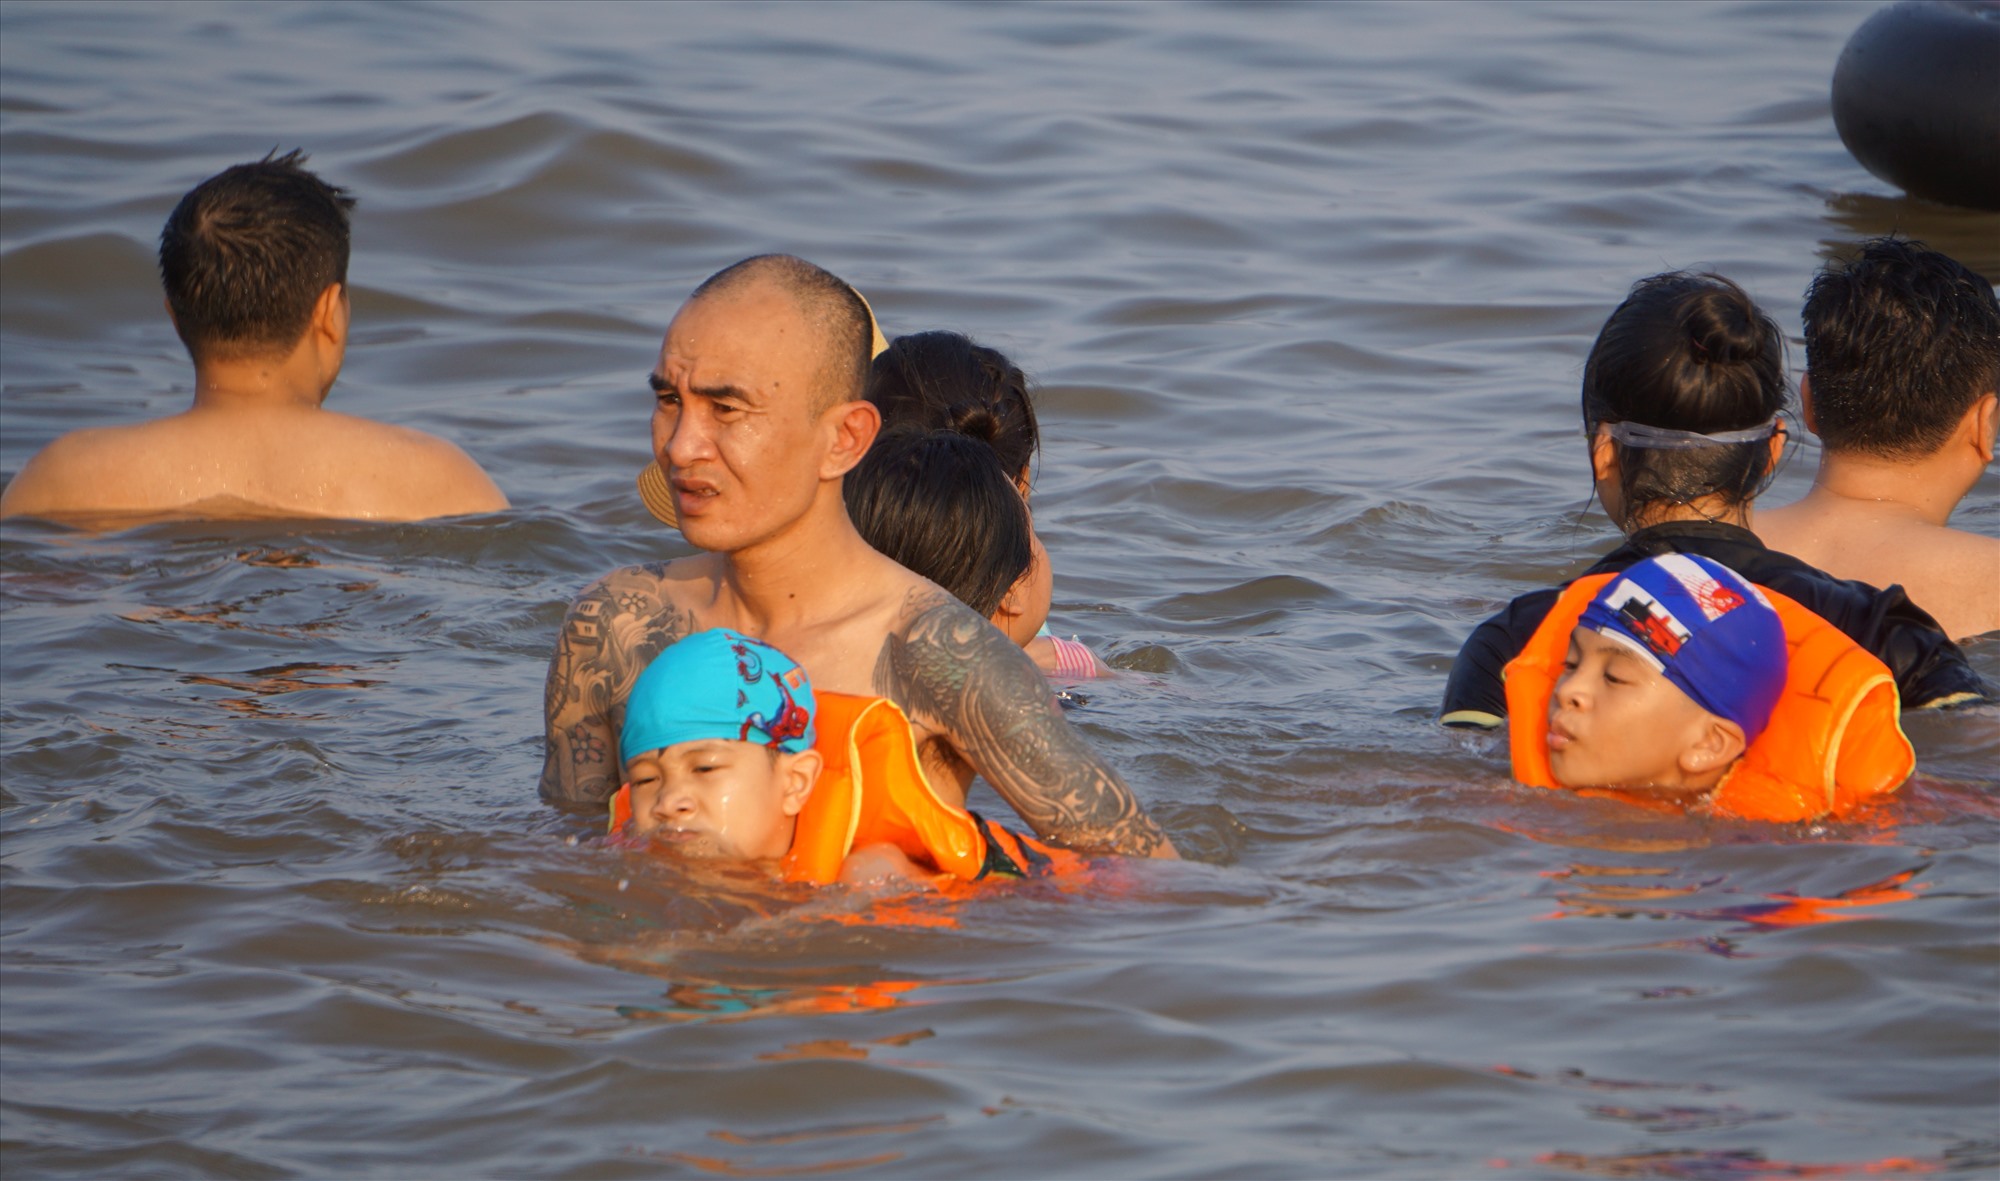 Thời tiết trong 2 ngày (1 và 2.9) ở Sầm Sơn nắng nóng, tạo điều kiện thuận lợi cho các du khách tắm mát. Ảnh: Quách Du